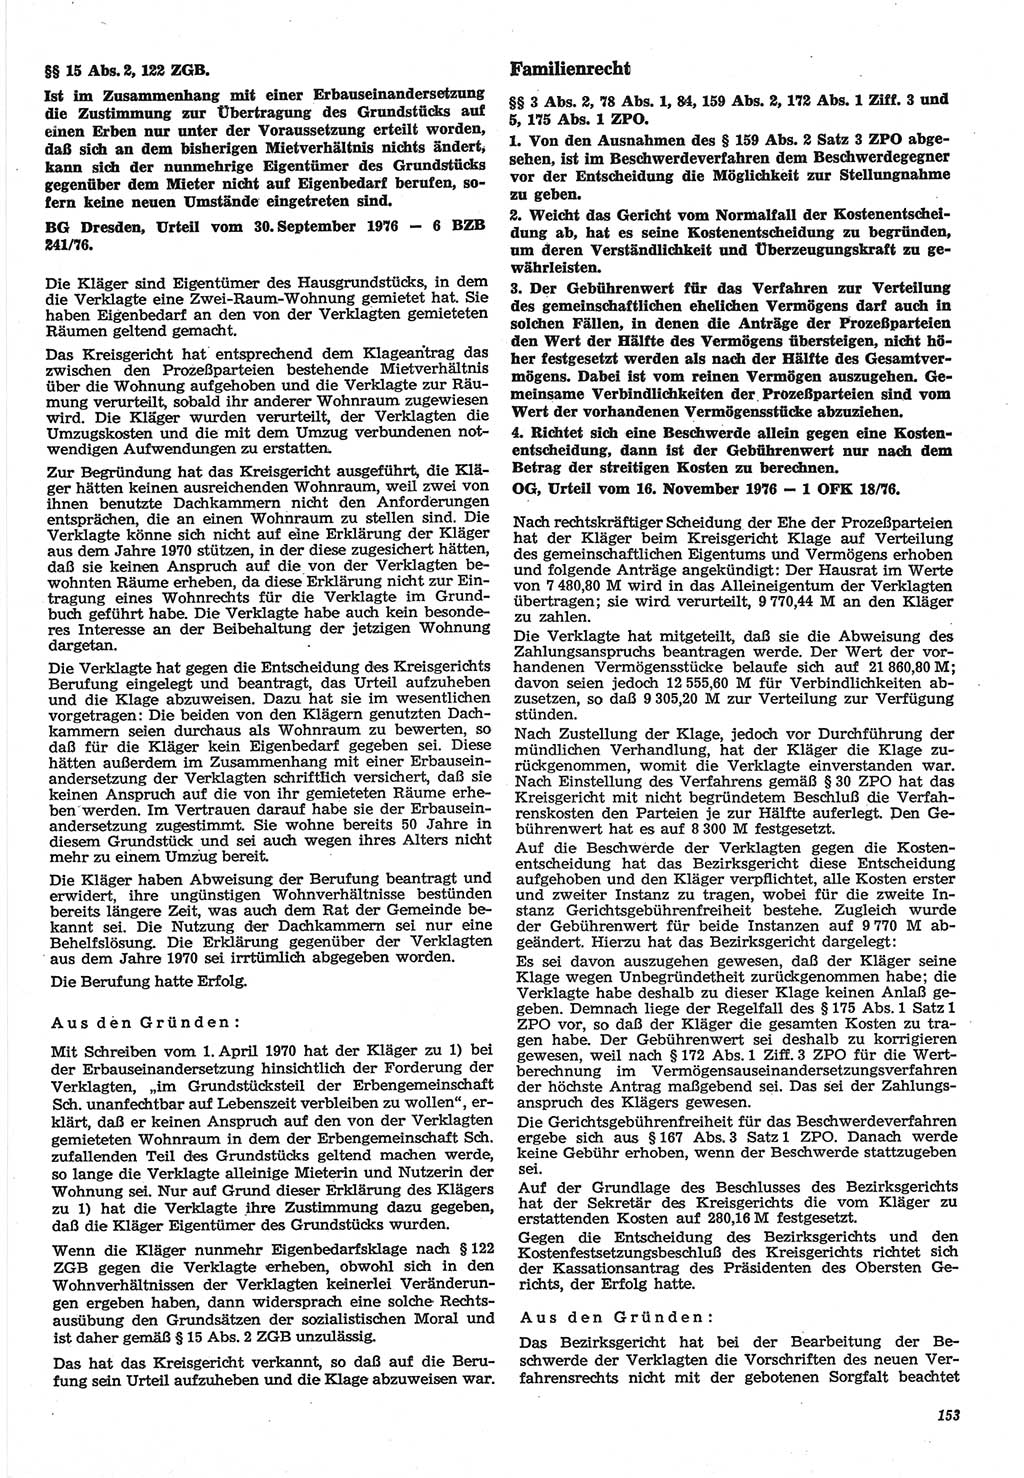 Neue Justiz (NJ), Zeitschrift für Recht und Rechtswissenschaft-Zeitschrift, sozialistisches Recht und Gesetzlichkeit, 31. Jahrgang 1977, Seite 153 (NJ DDR 1977, S. 153)